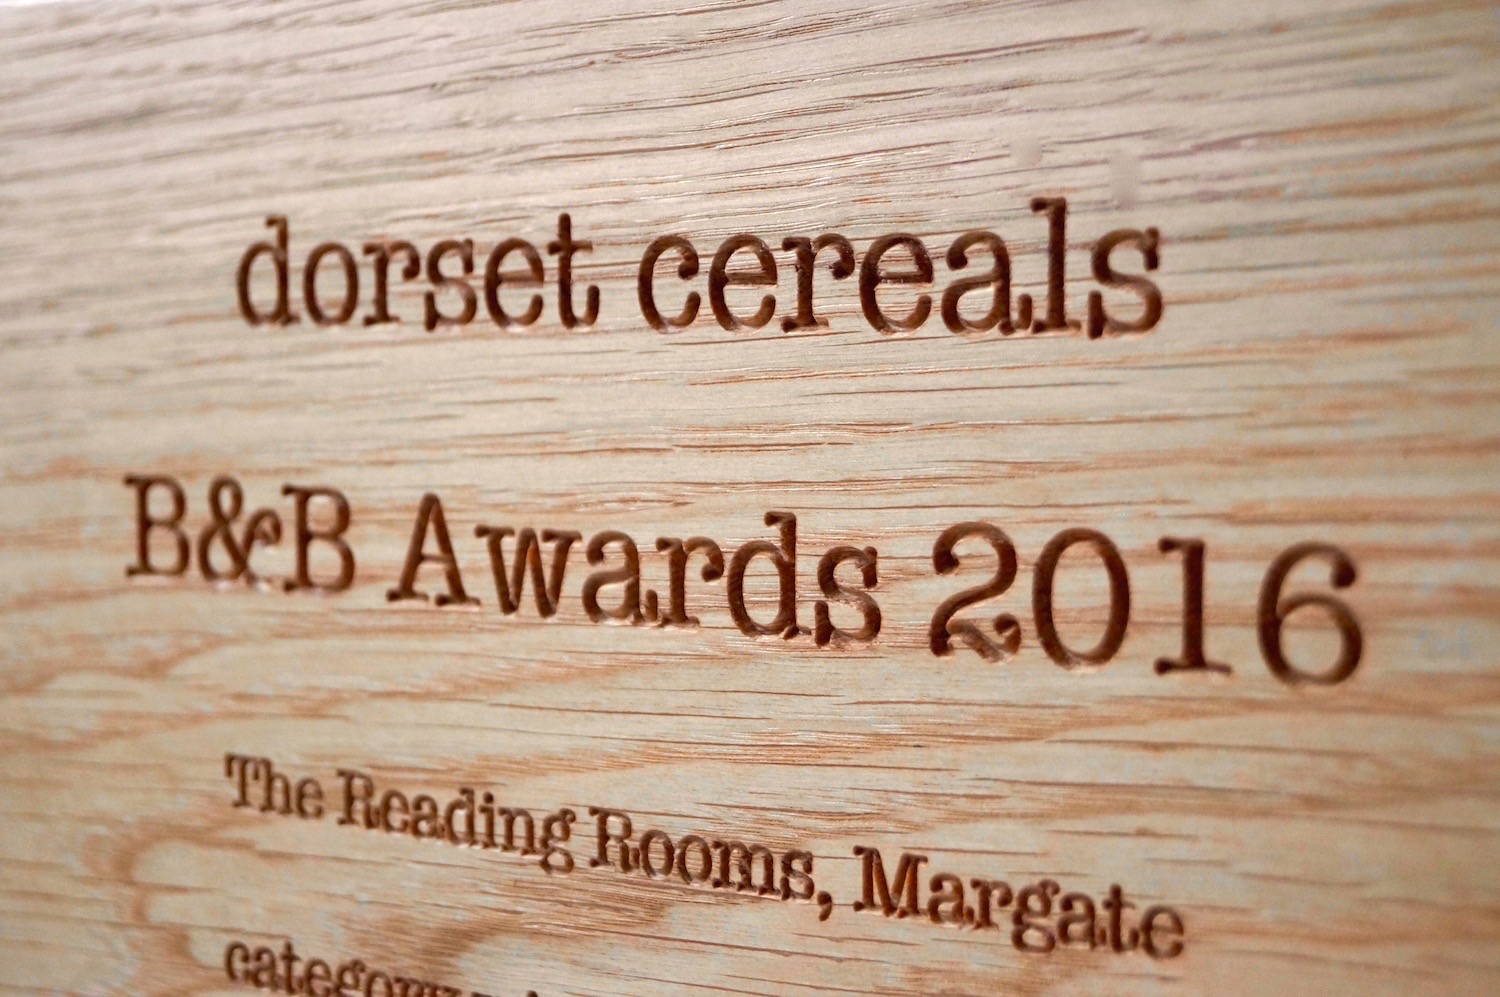 engraved-oak-awards-dorset-cereals-makemesomethingspecial.com